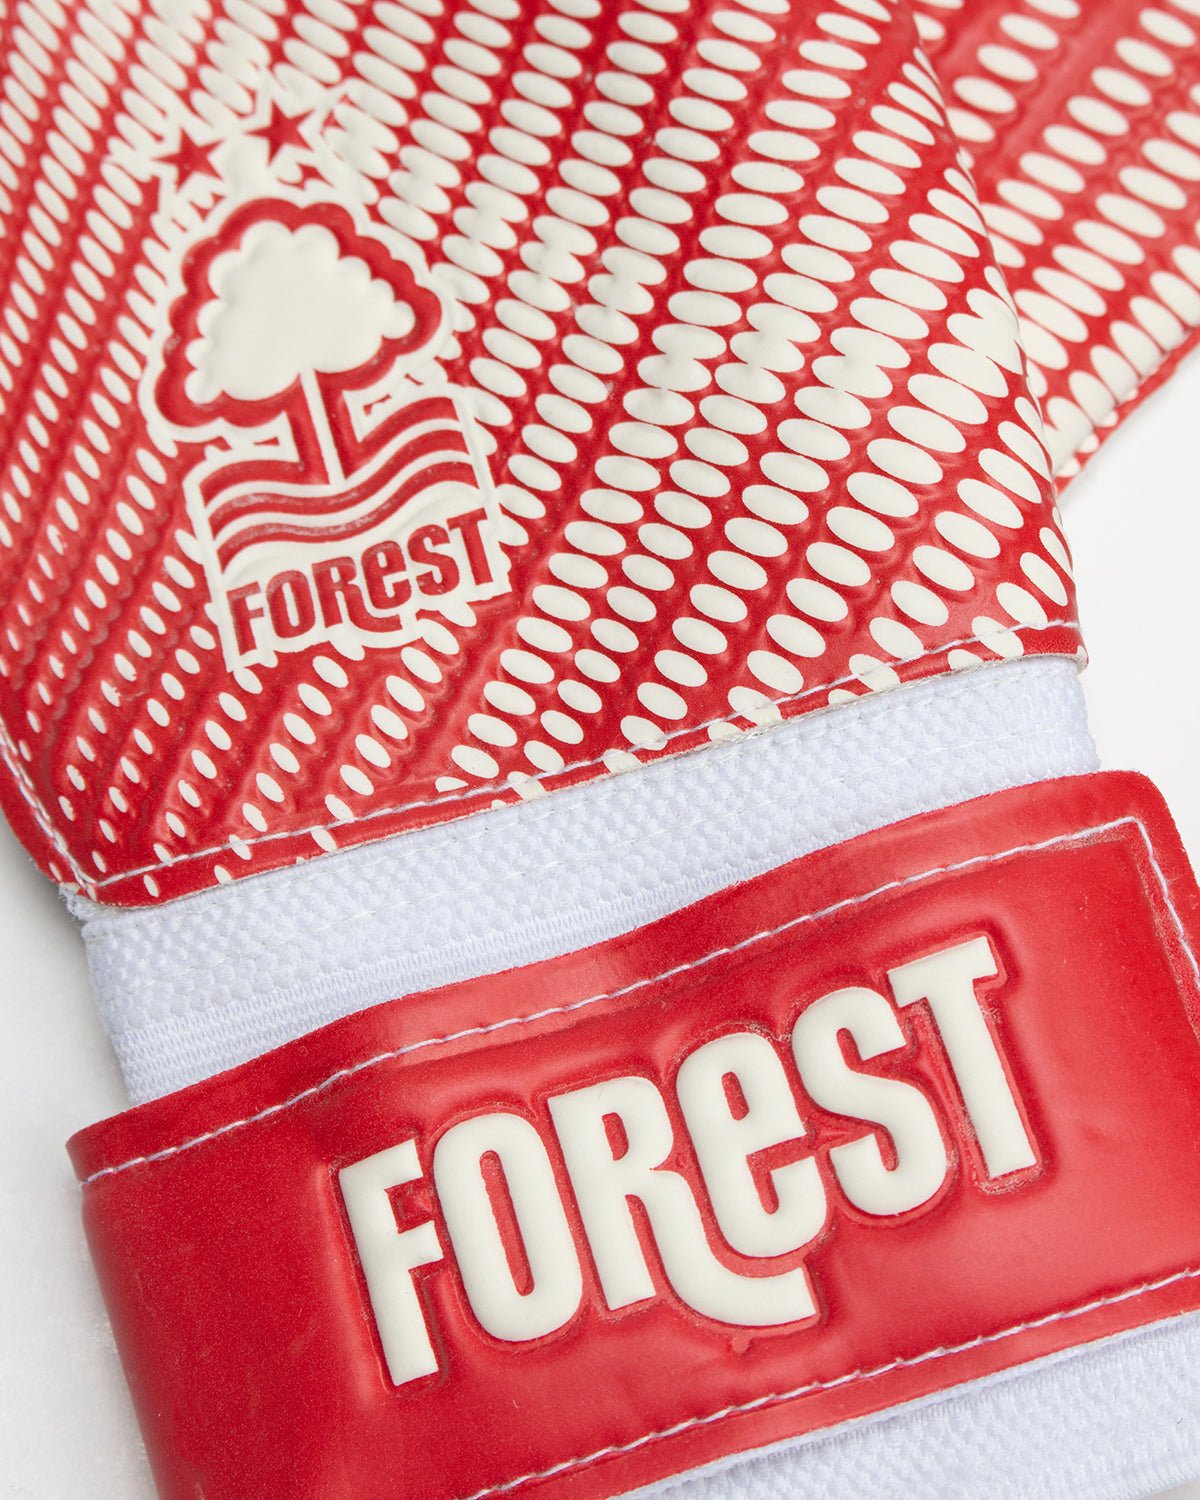 NFFC Goalkeeper Gloves - Nottingham Forest FC